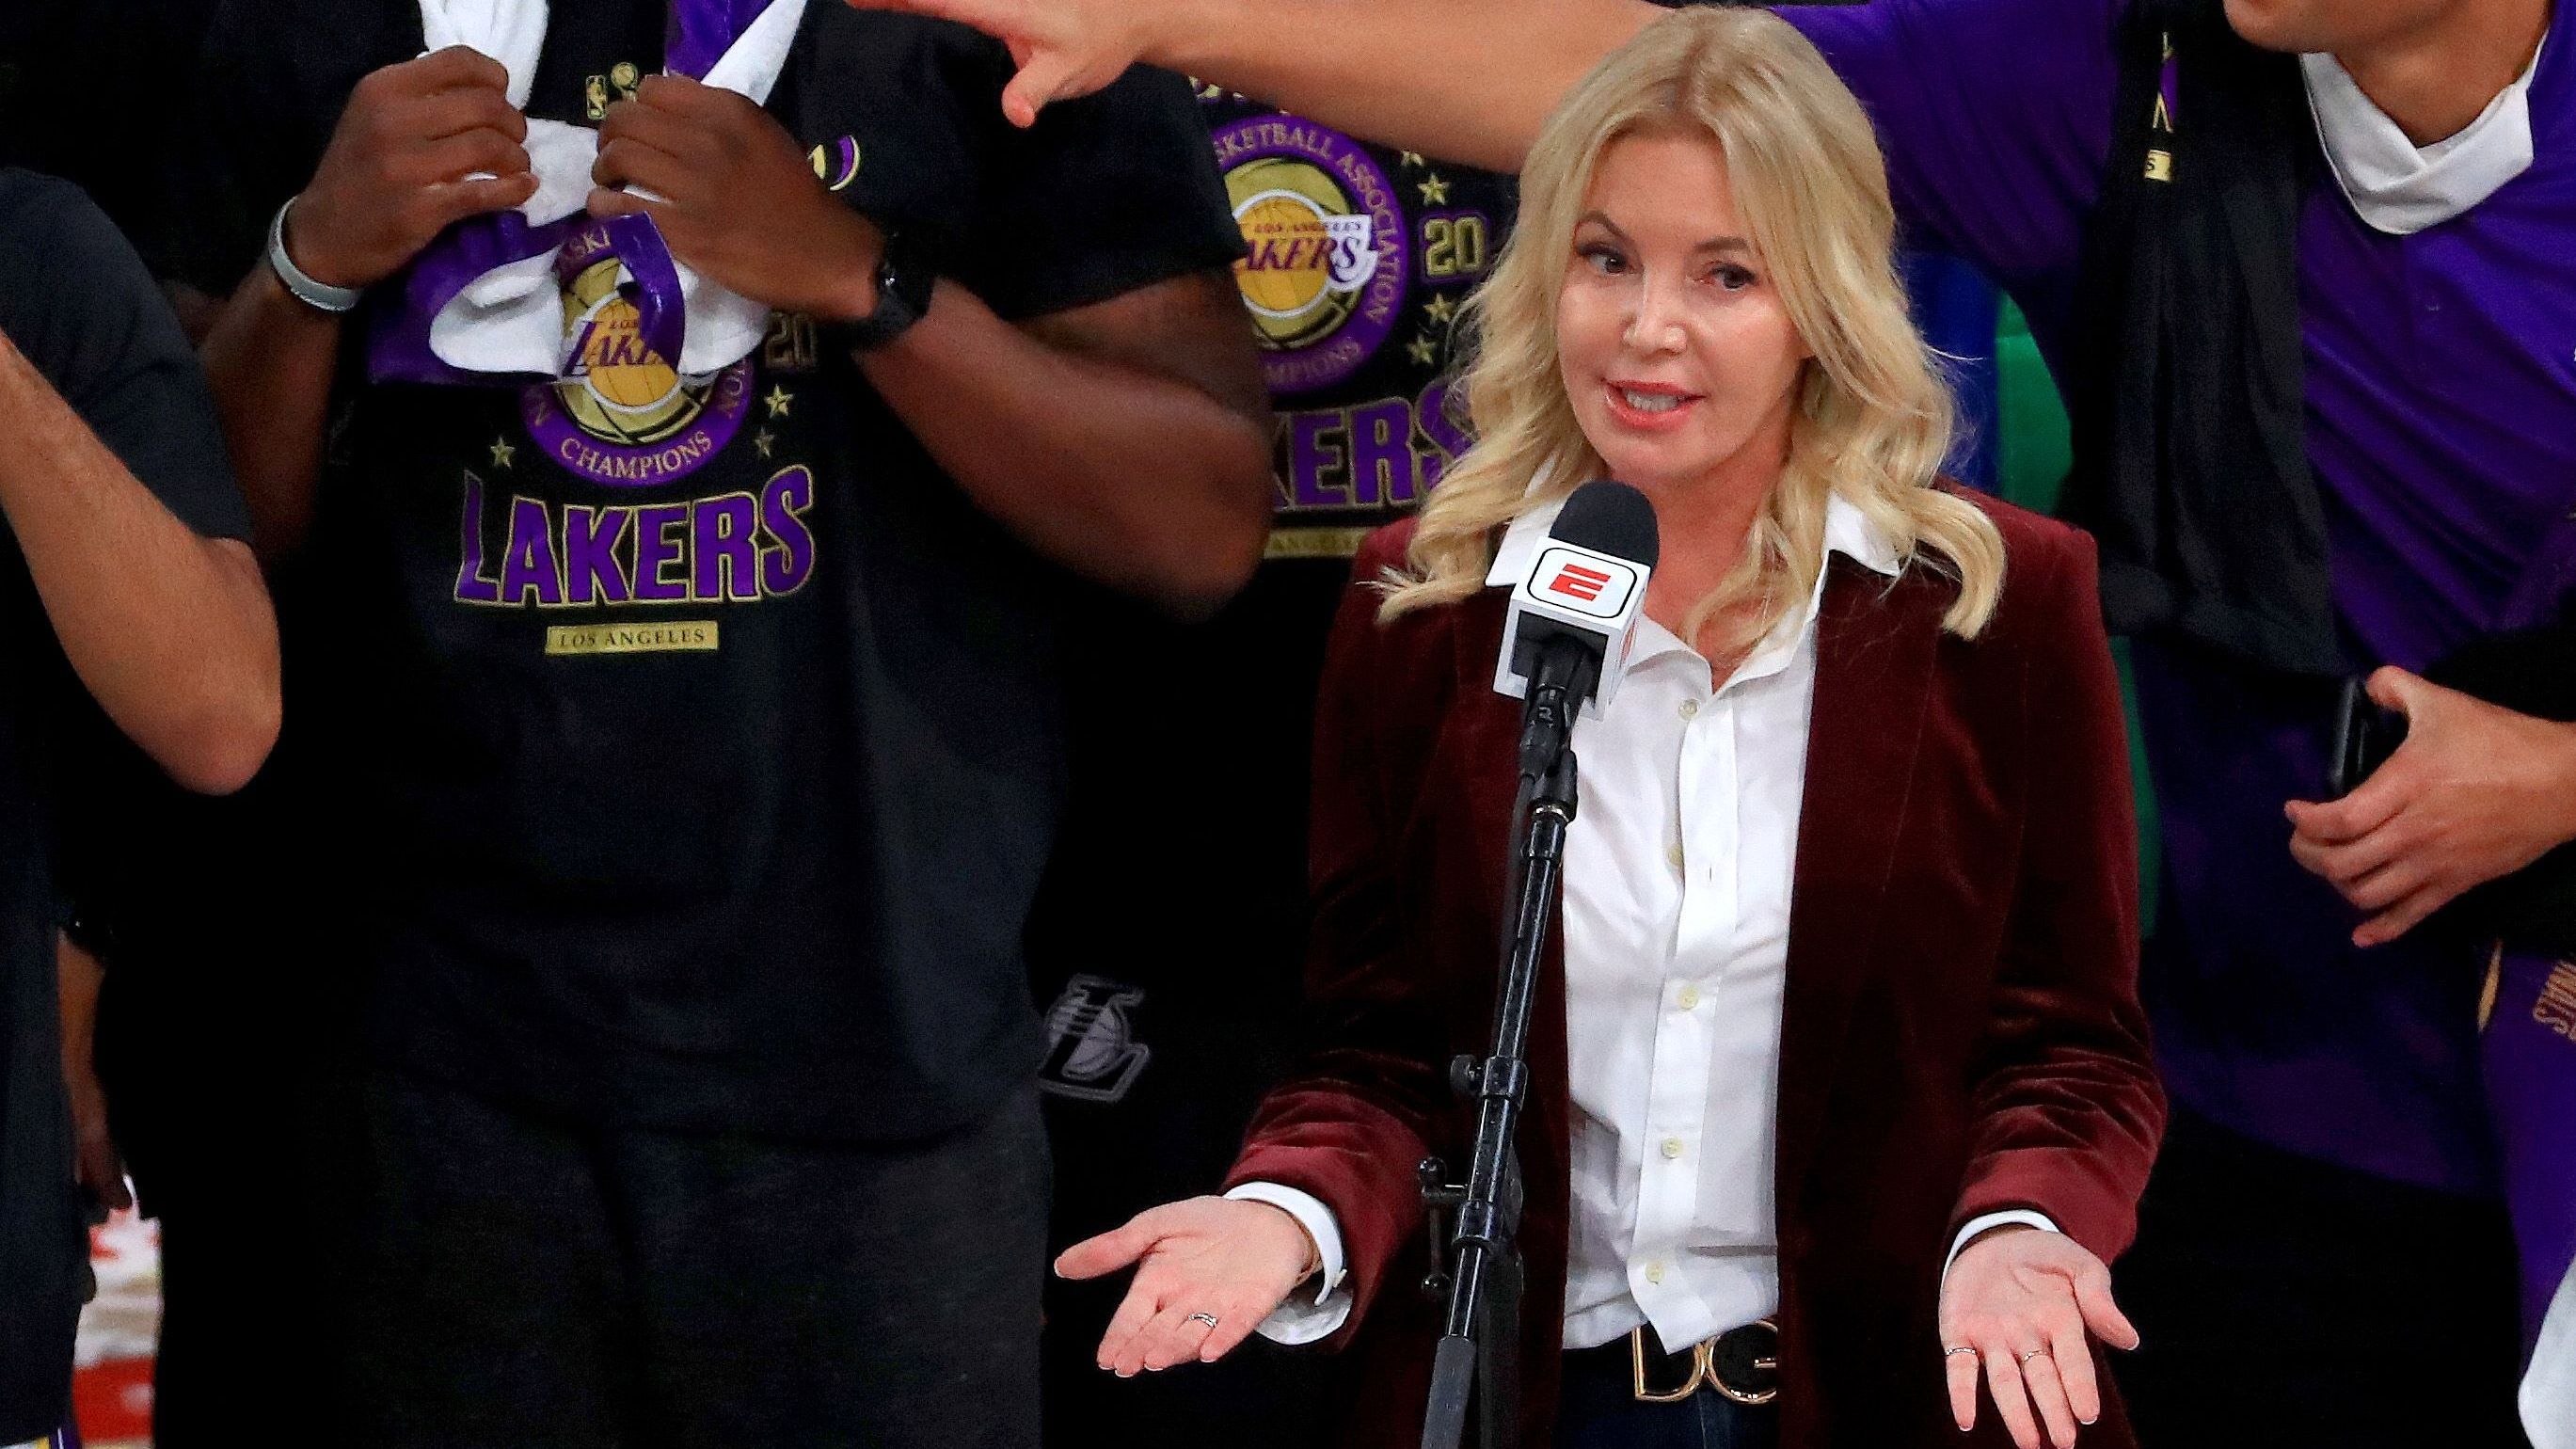 <strong>Los Angeles Lakers - Jeanie Buss</strong><br>Besitzer seit: 2014*<br>Kaufpreis: 20 Millionen (1979)<br>Aktueller Wert: 6,4 Milliarden<br><br>*Jeanie Buss übernahm die Führung 2014 von Ehemann Jerry Buss. Dieser erwarb die Franchise bereits 1979.